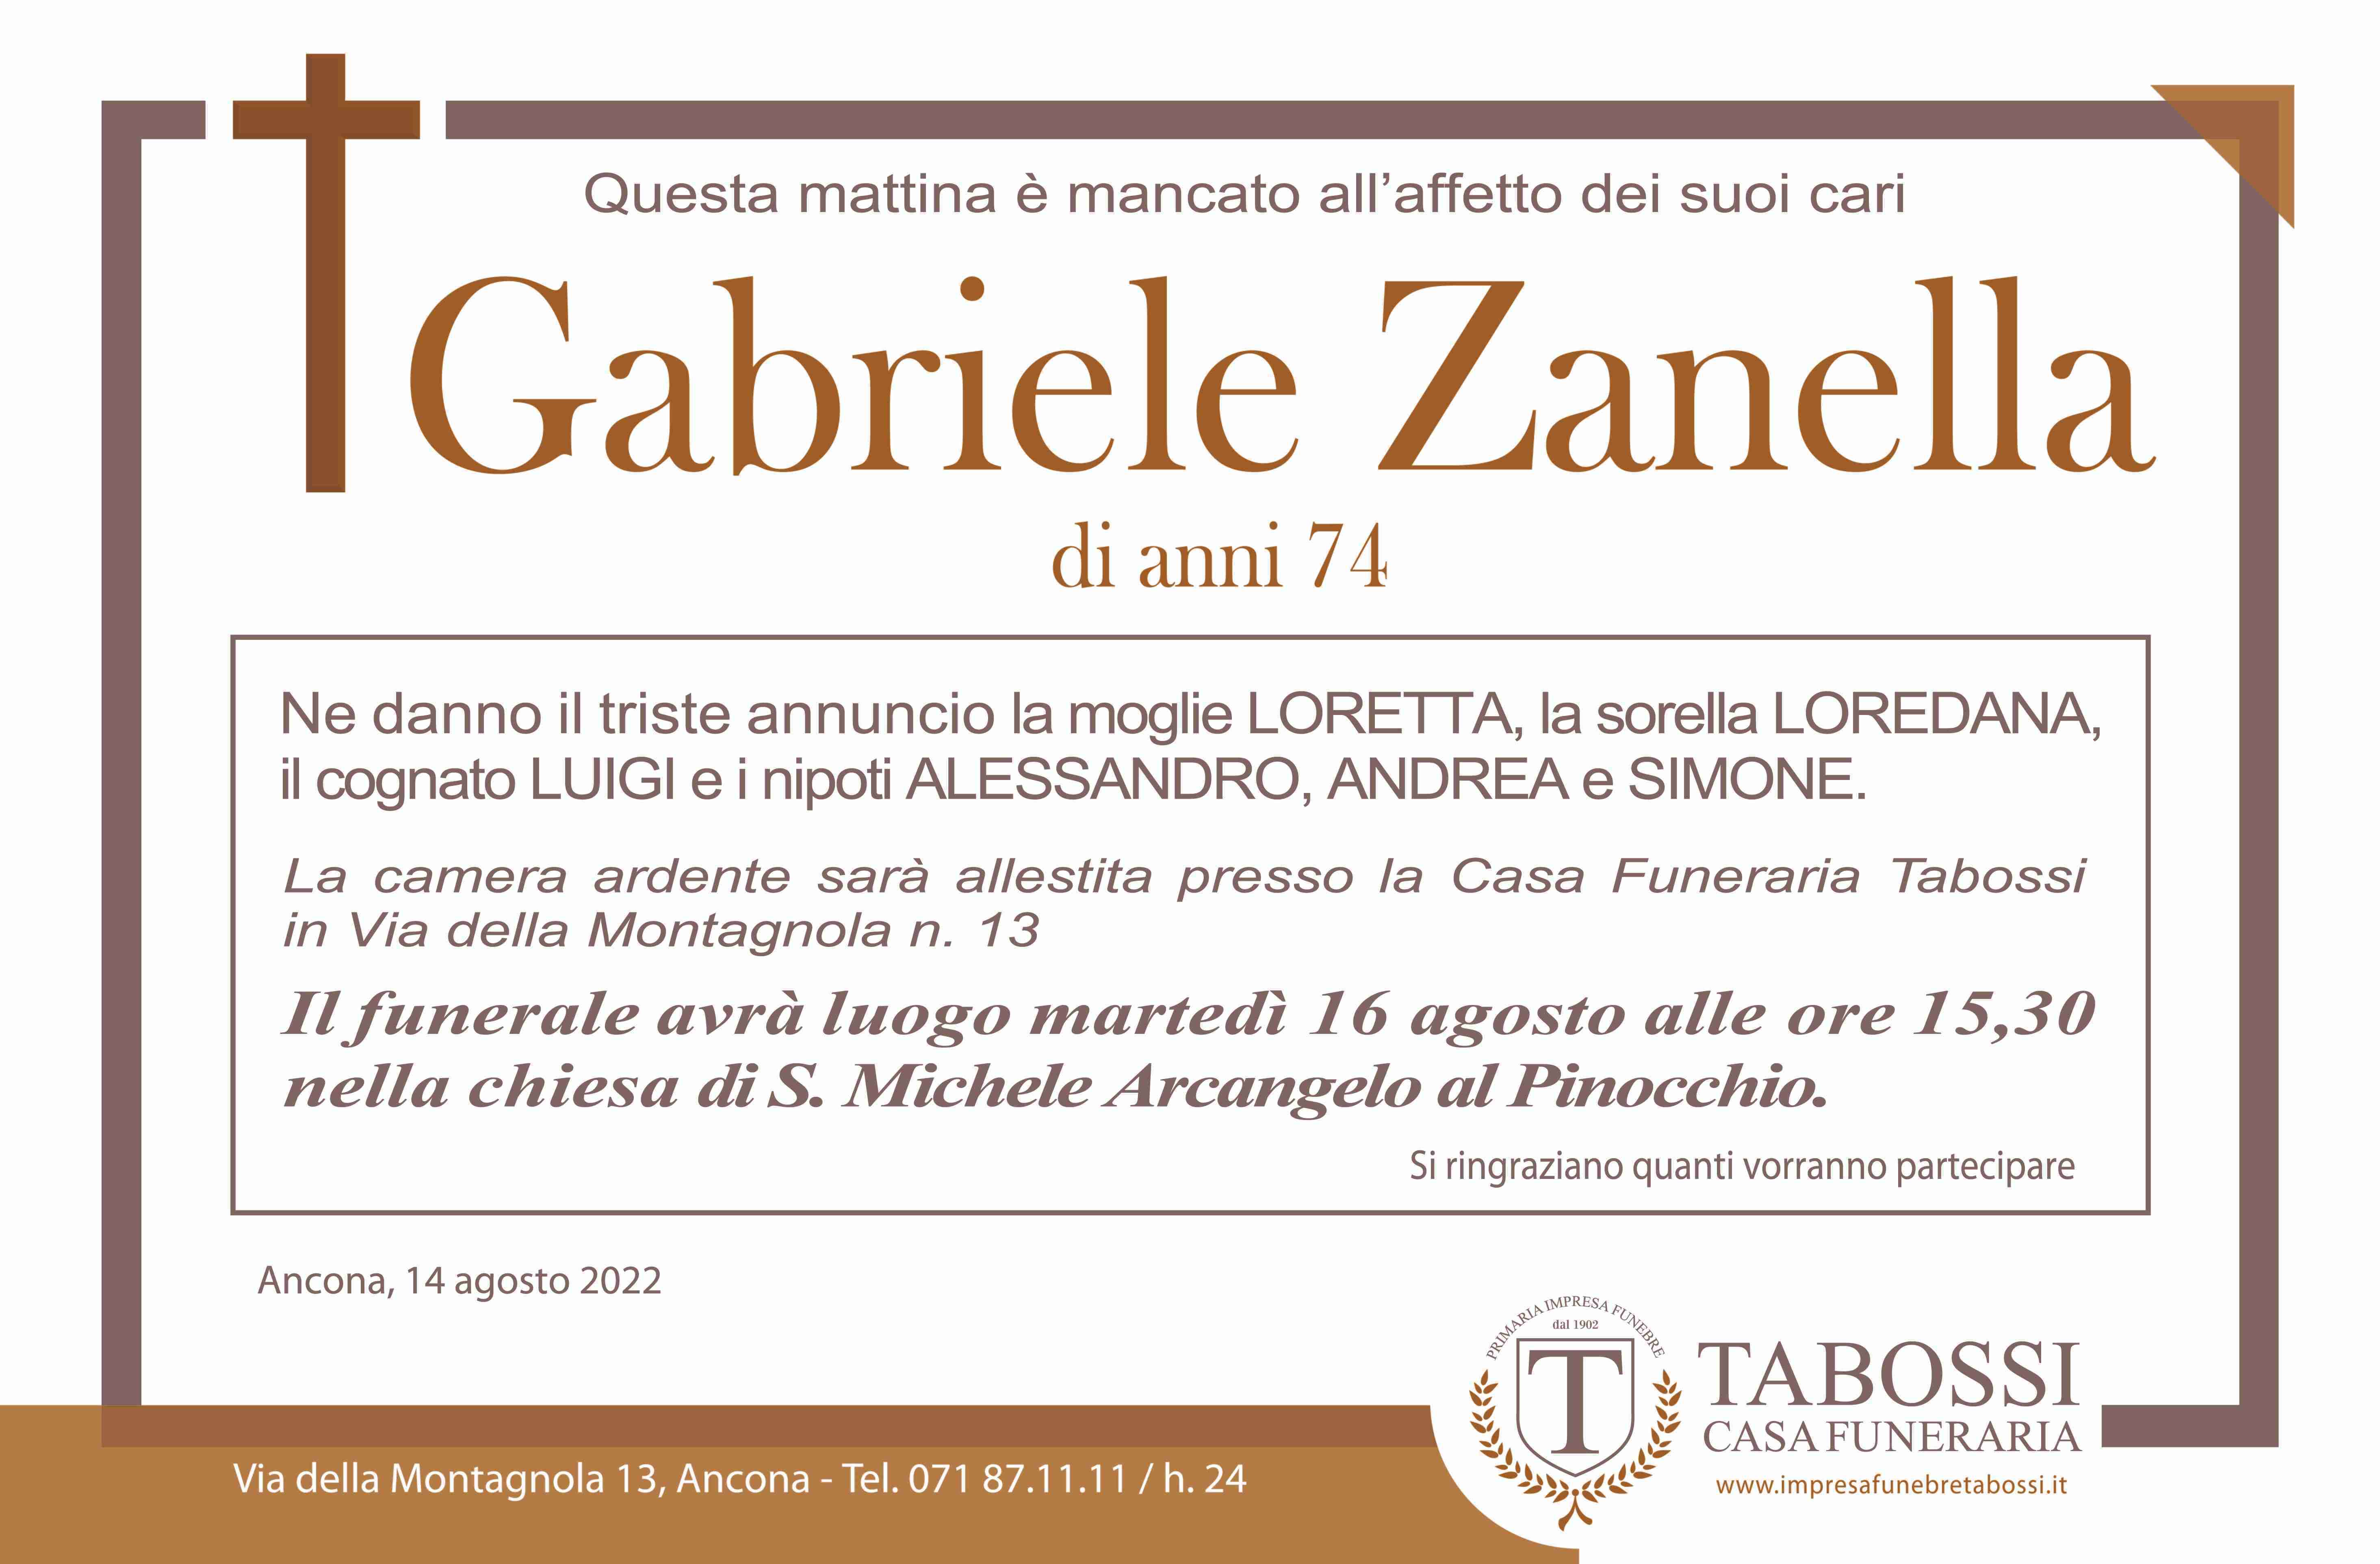 Gabriele Zanella